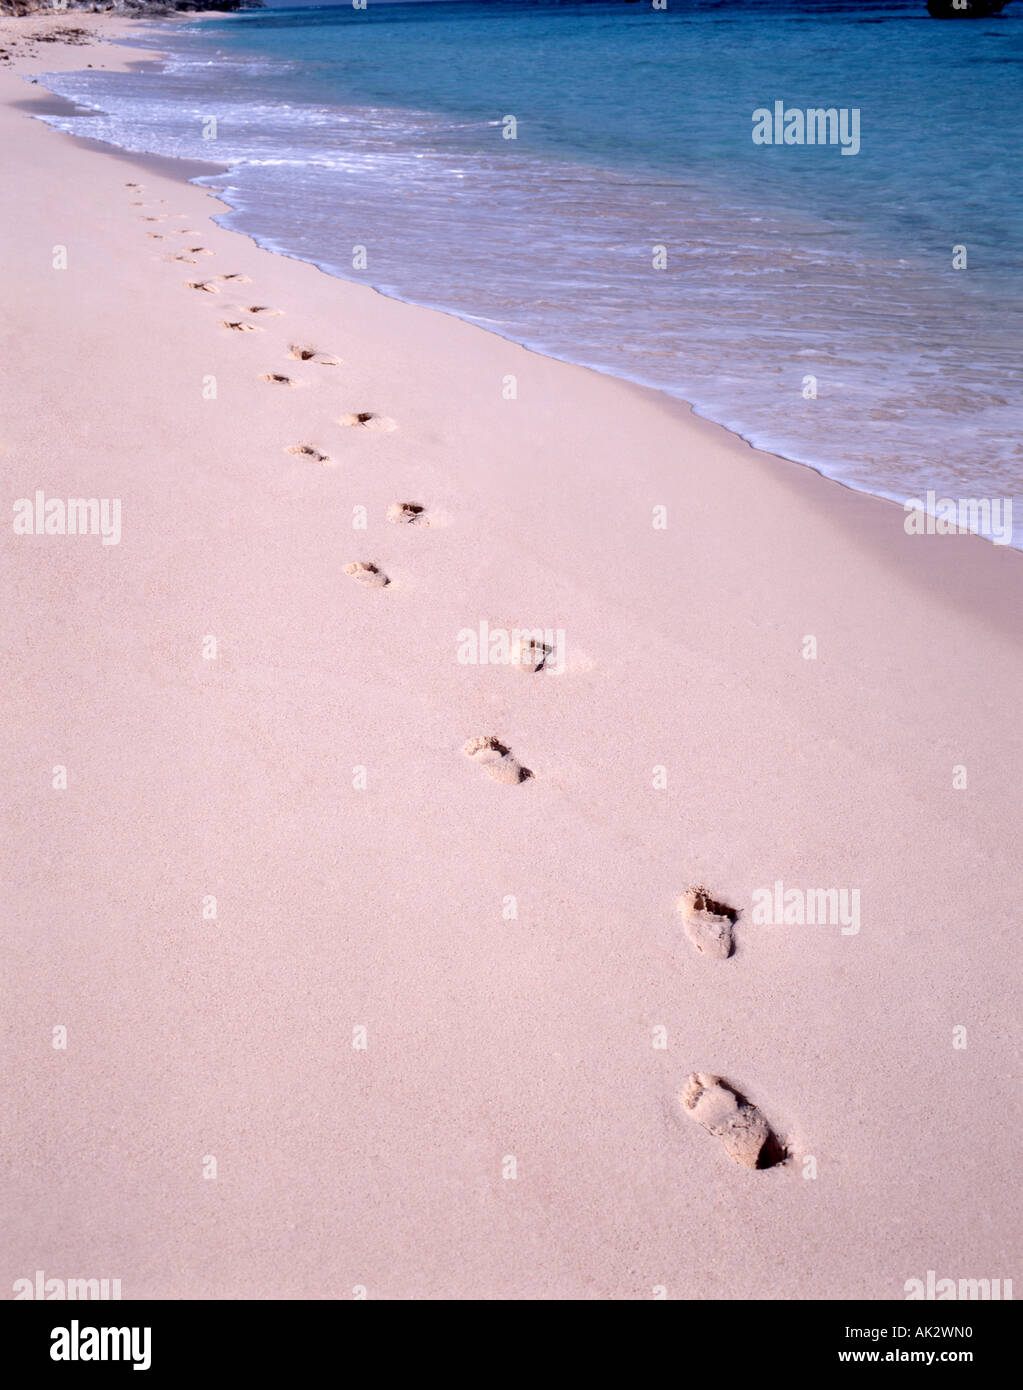 Empreintes dans le sable au bord de l'eau, Warwick long Bay, Warwick, Bermudes Banque D'Images